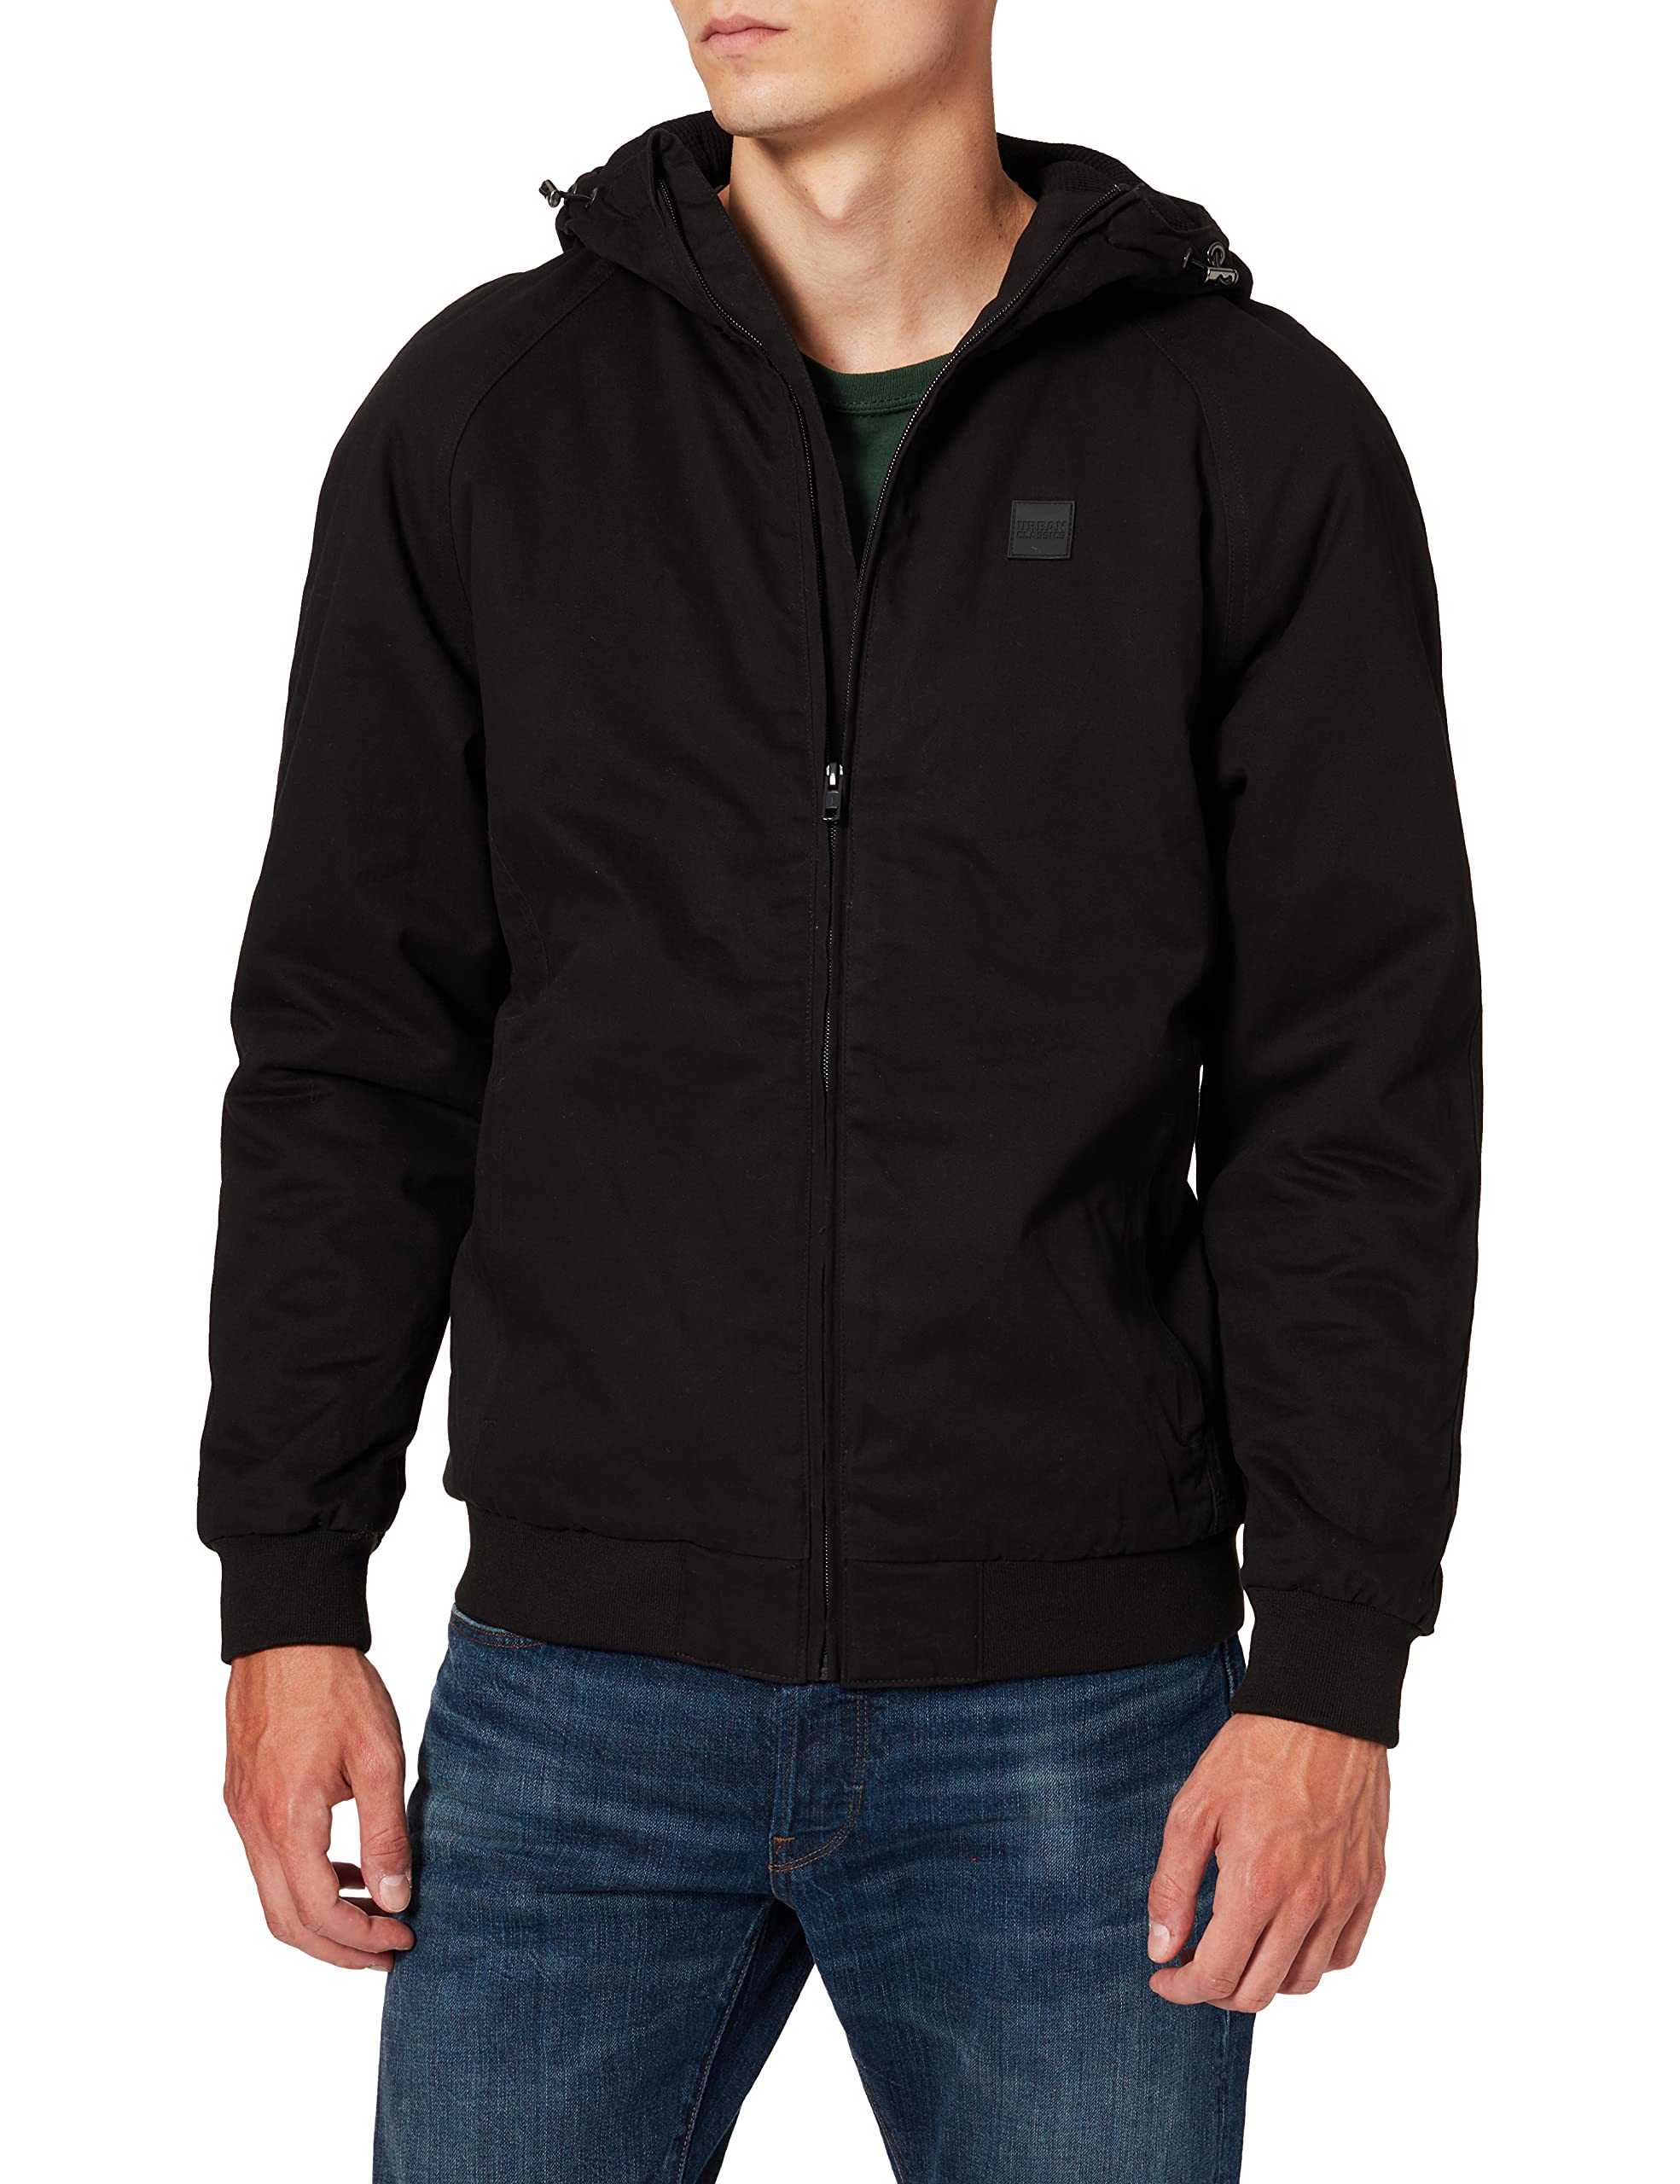 Urban Classics Herren Kurzjacke Hooded Cotton Zip Jacket, Jacke für Herbst und Winter mit Kapuze, warm gefüttert - Farbe black, Größe S